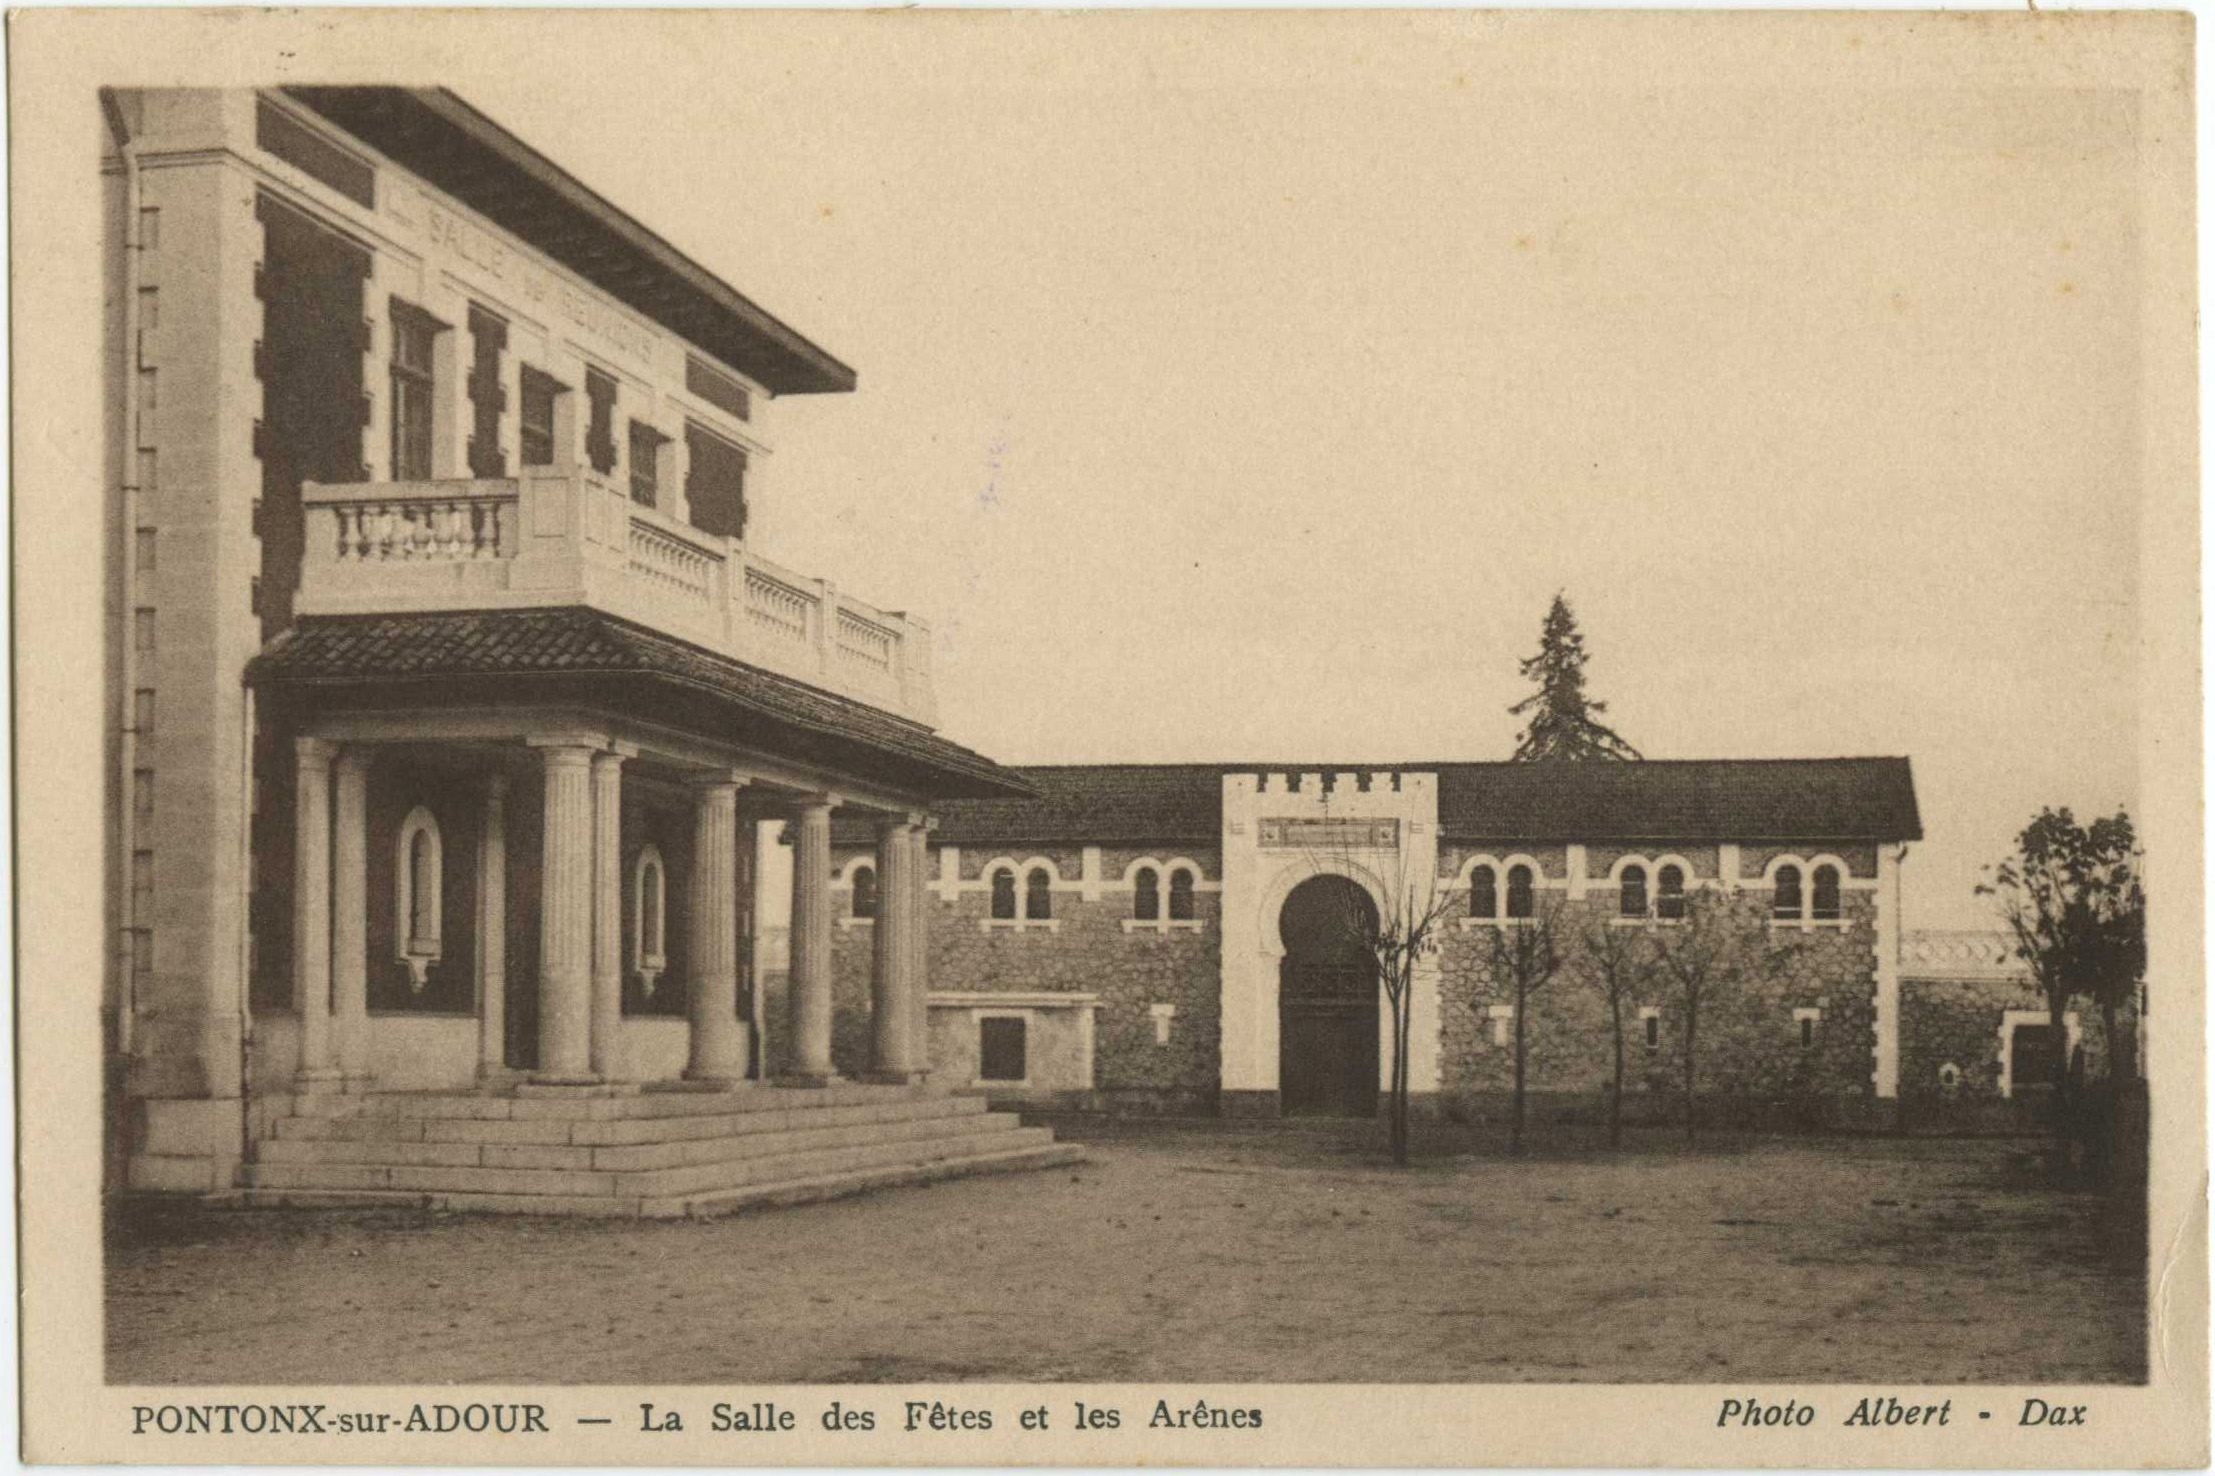 Pontonx-sur-l'Adour - La Salle des Fêtes et les Arênes